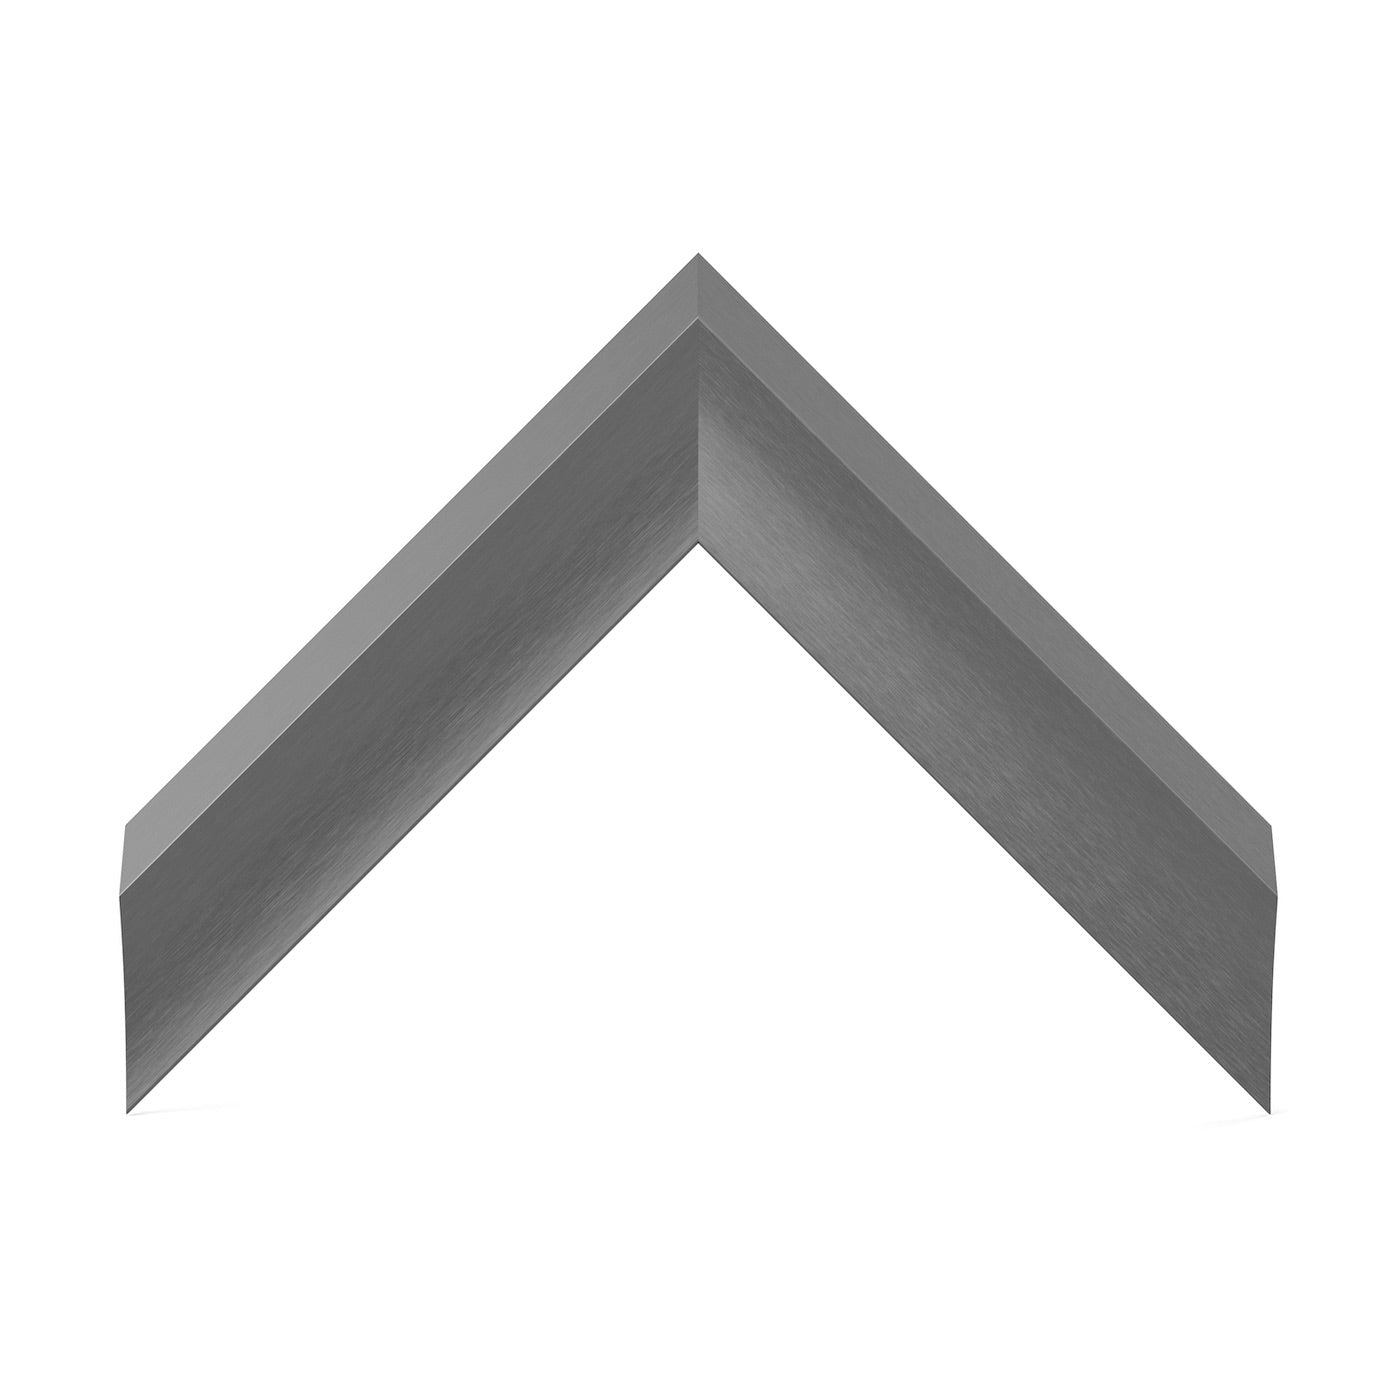 SAMPLE - Graphite Alloy - Profile: Prismatic